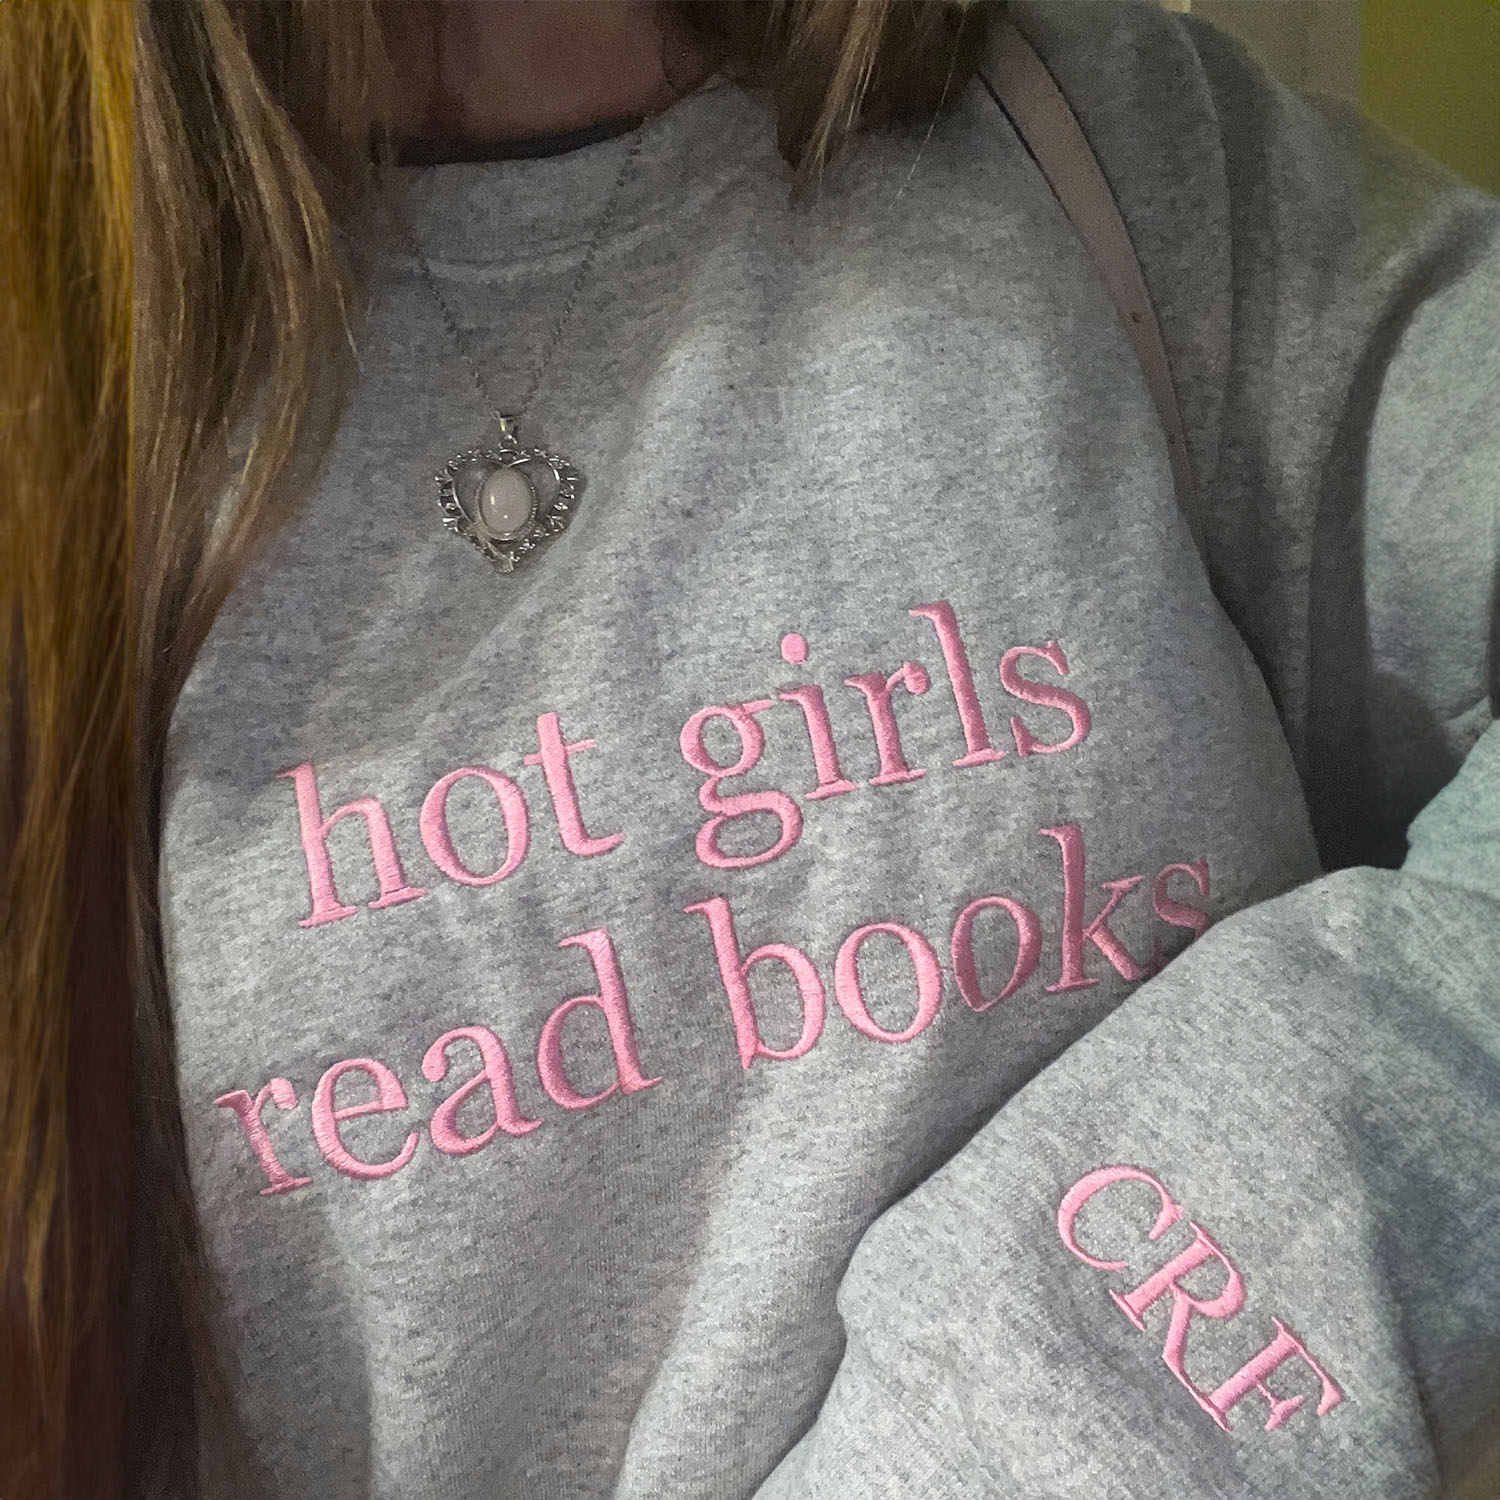 hot girl read books